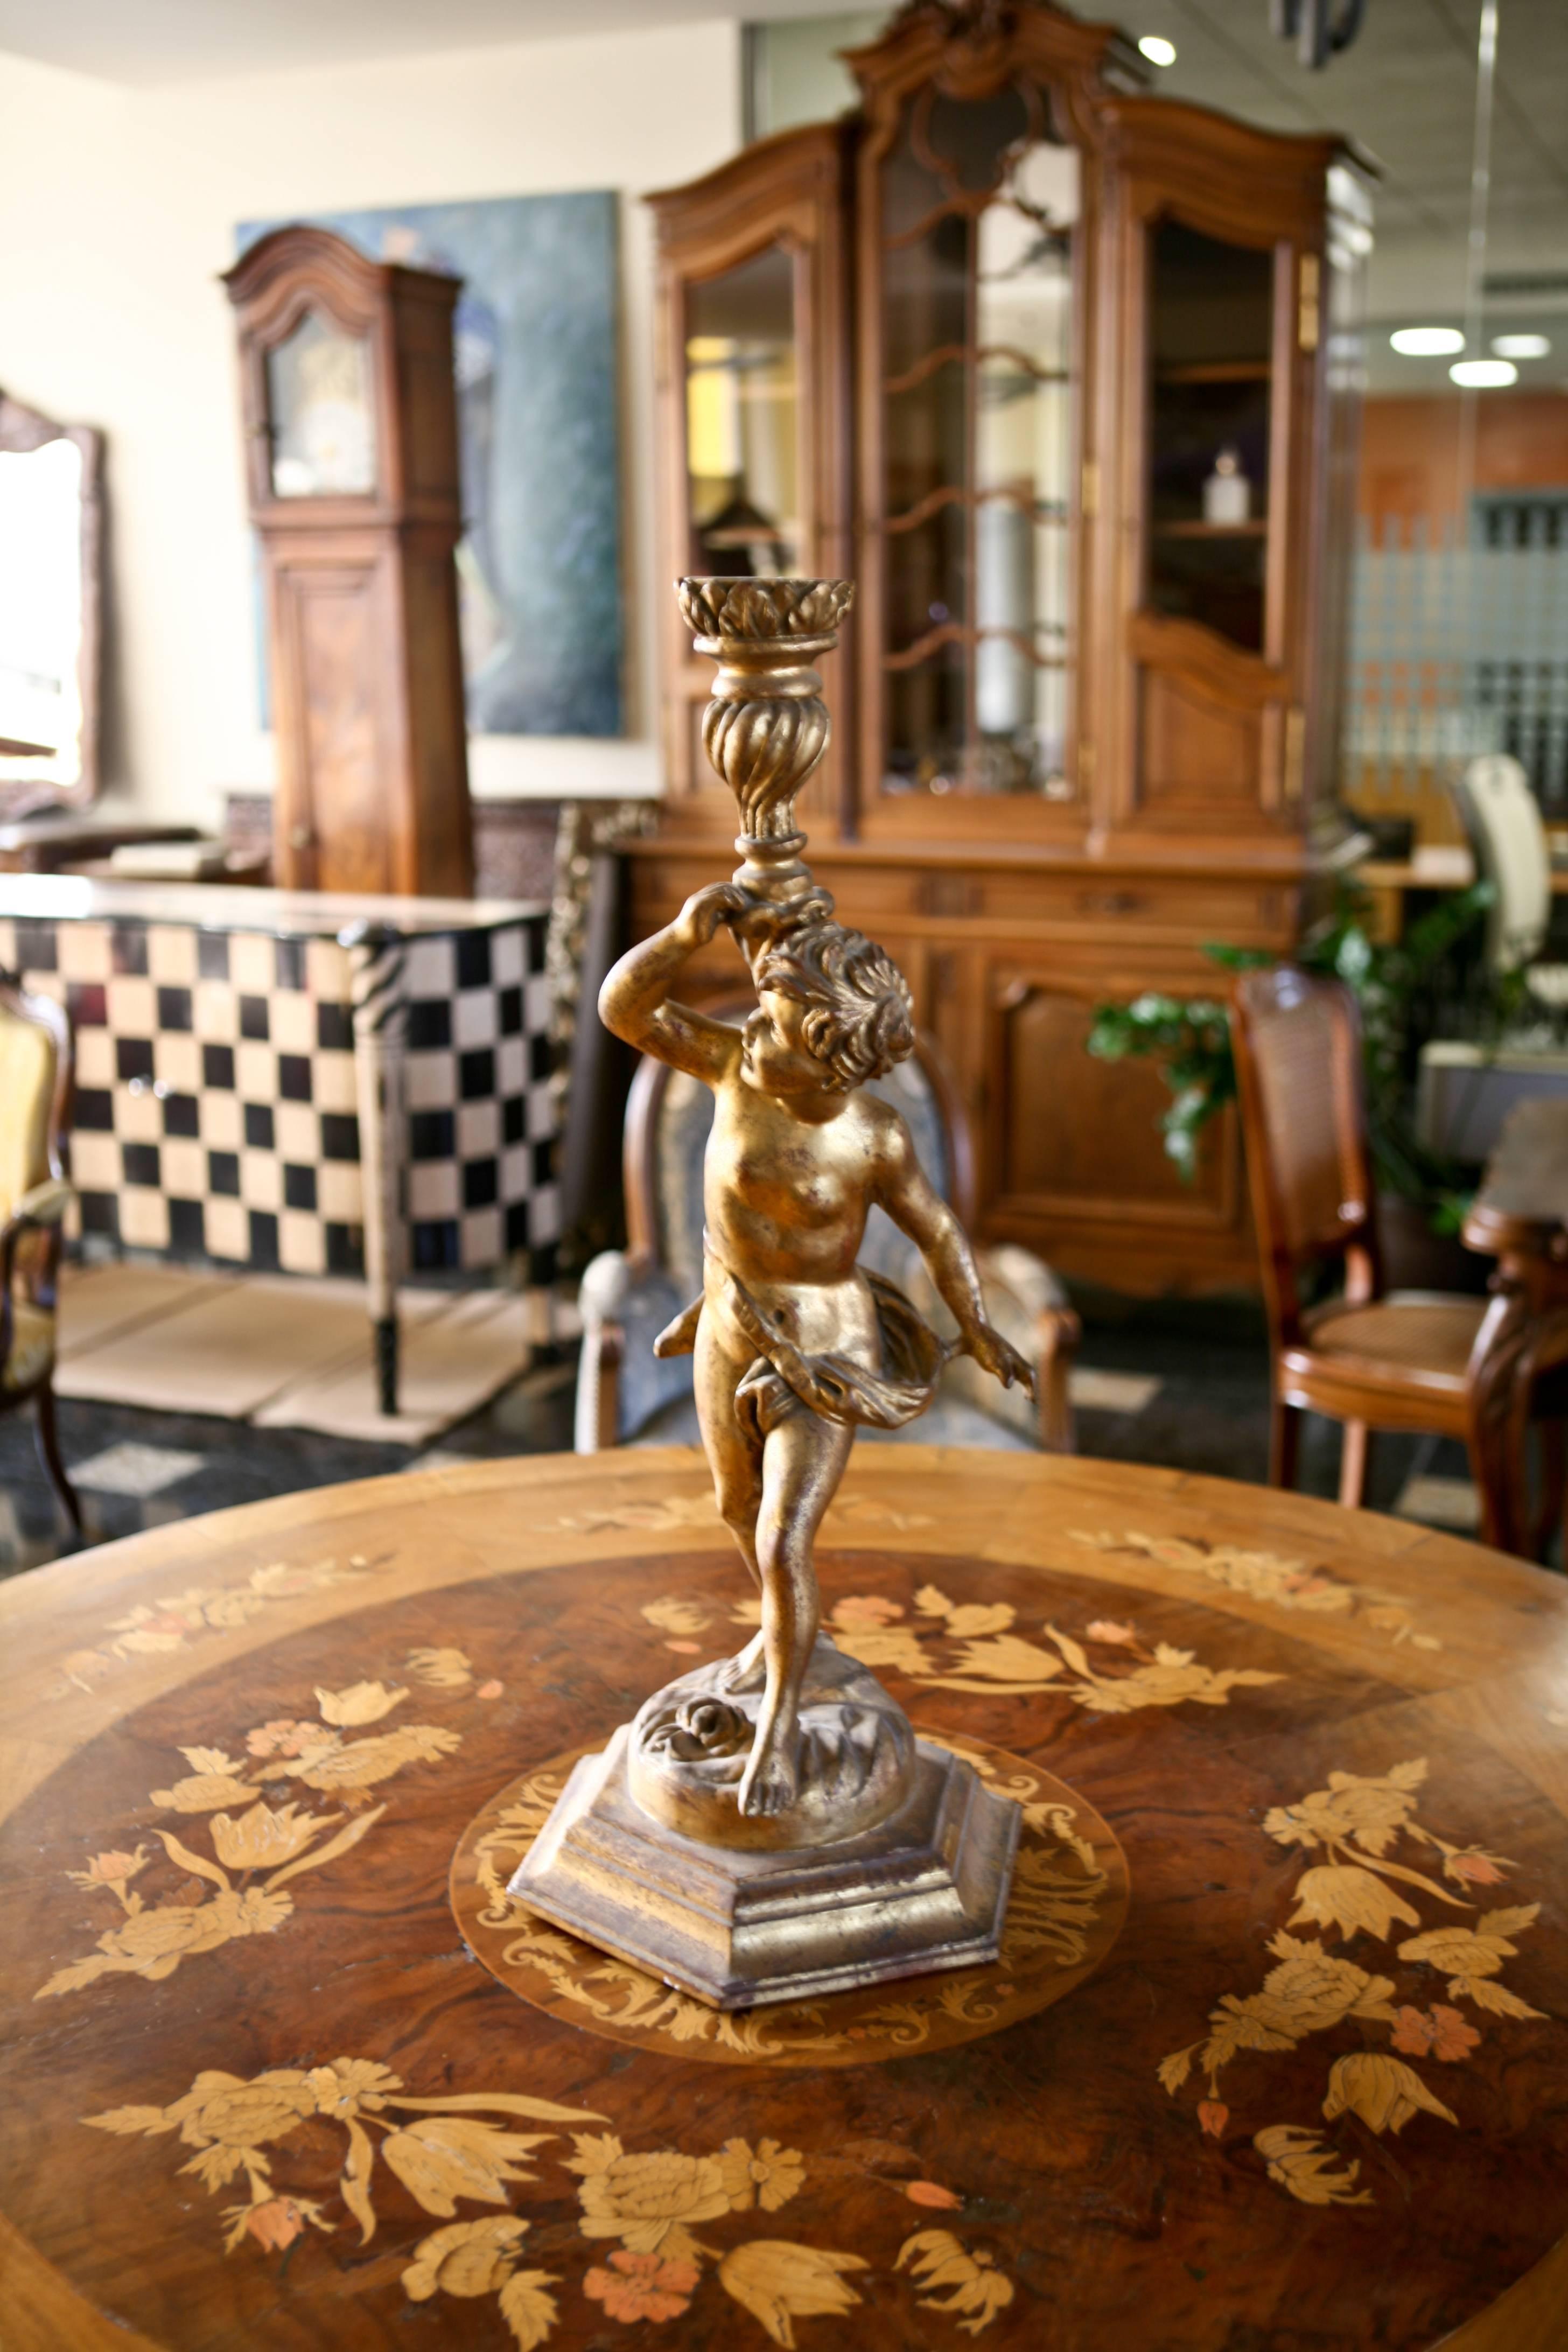 Magnifique base sculptée à la main pour lampe avec une très élégante figure de chérubin.
Proportion très stable.
France.